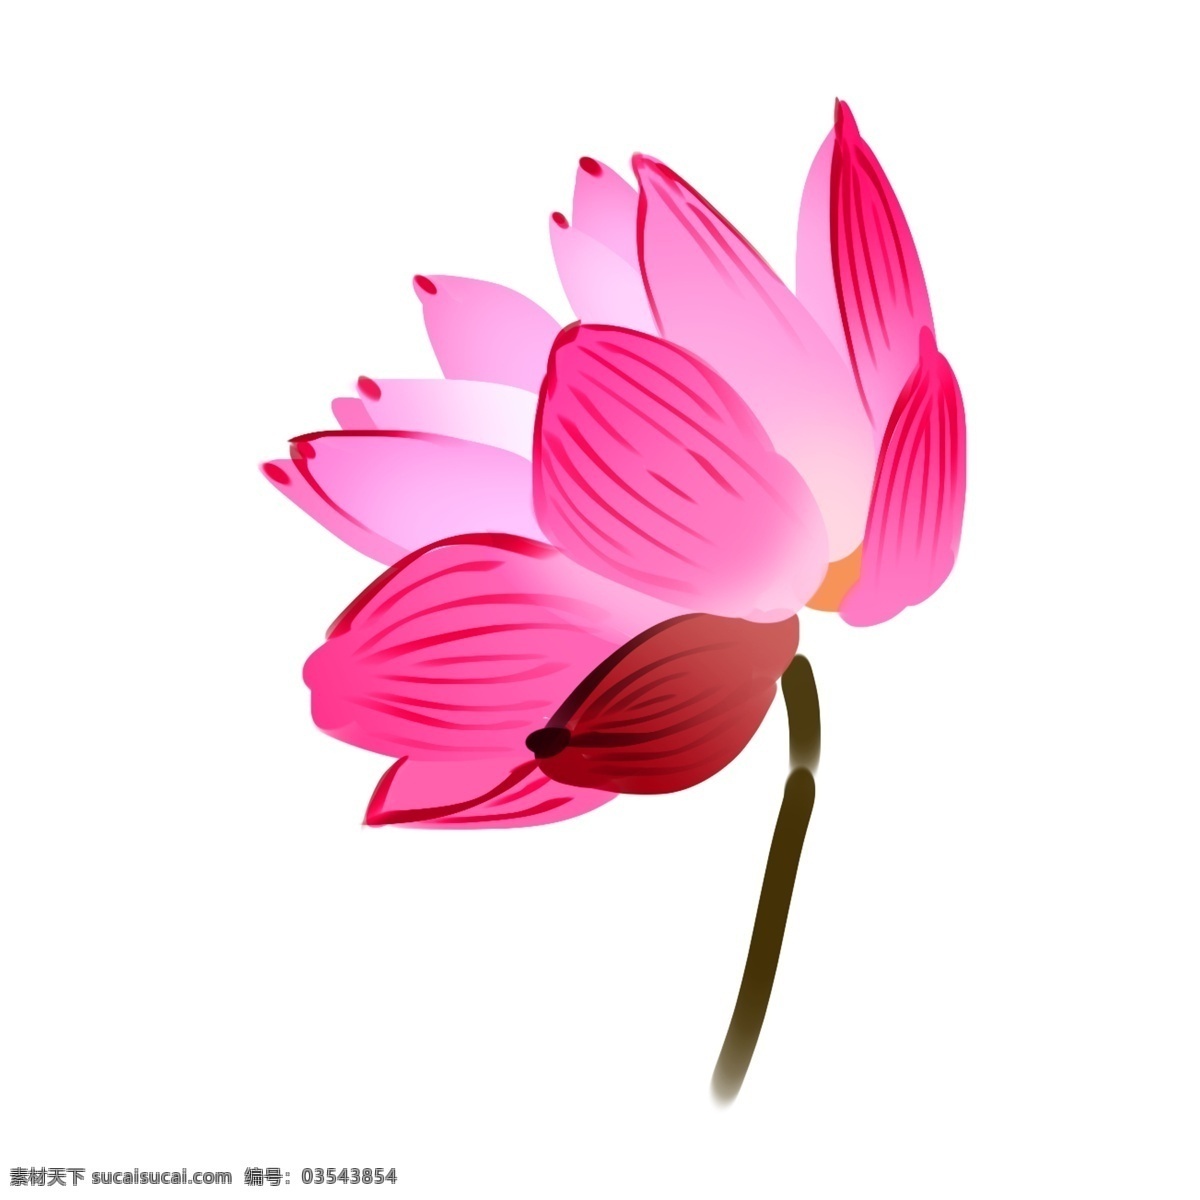 卡通 粉色 荷花 插画 粉色的荷花 花朵 一枝荷花 花枝 植物 漂亮的荷花 春天 春天荷花 卡通荷花插画